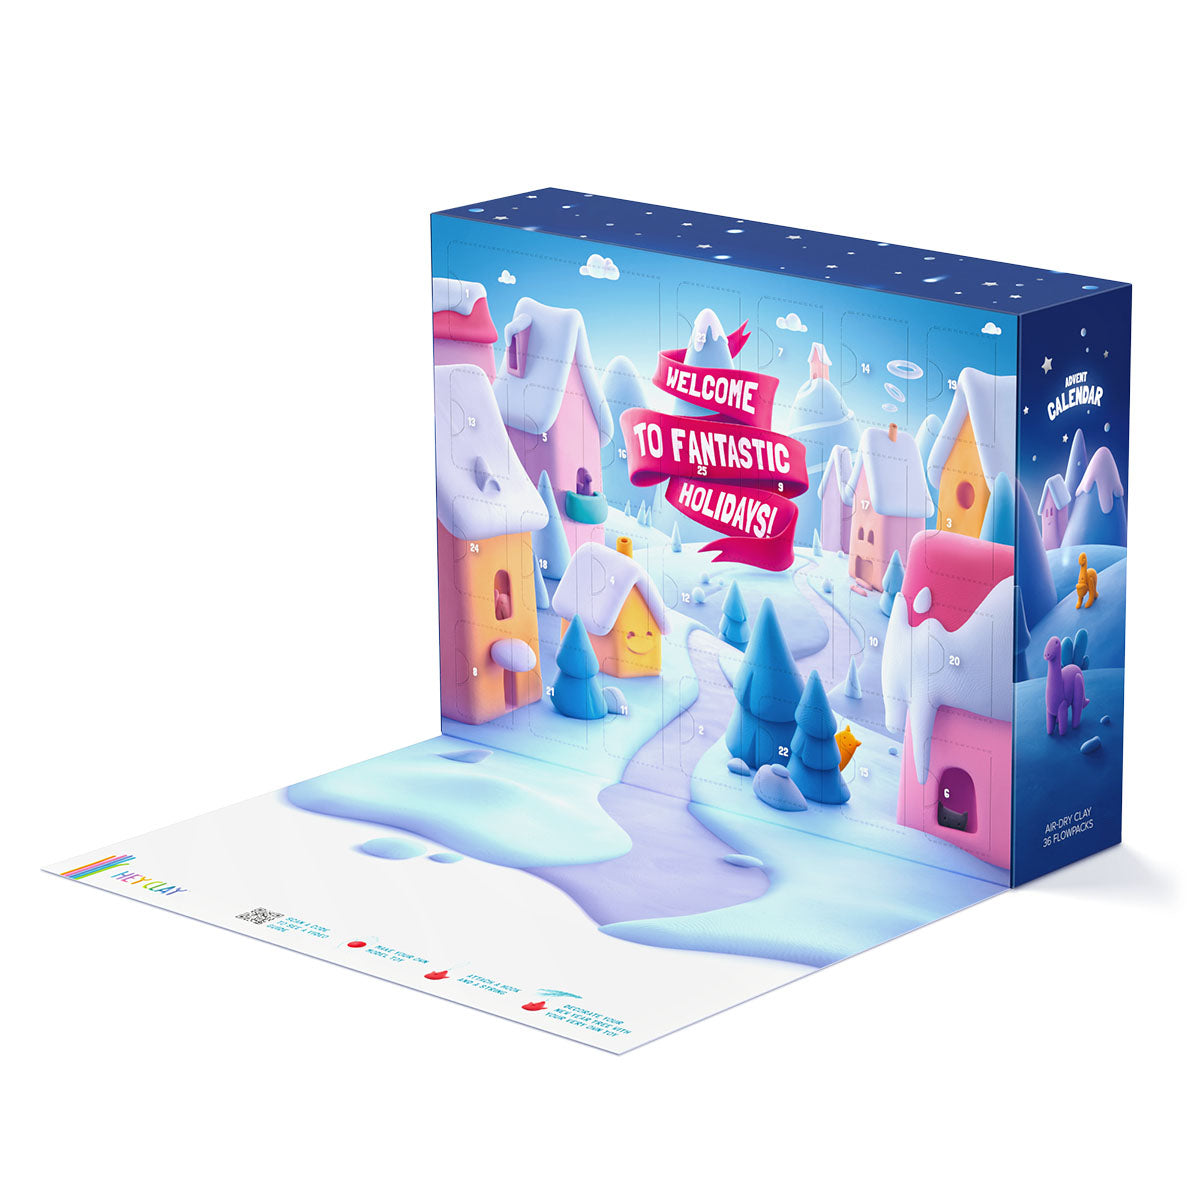 Creatief met klei: de HeyClay adventskalender limited edition is het perfecte cadeau de komende feestdagen. Download de app en klei 25 figuurtjes aan de hand van de instructievideo’s. VanZus